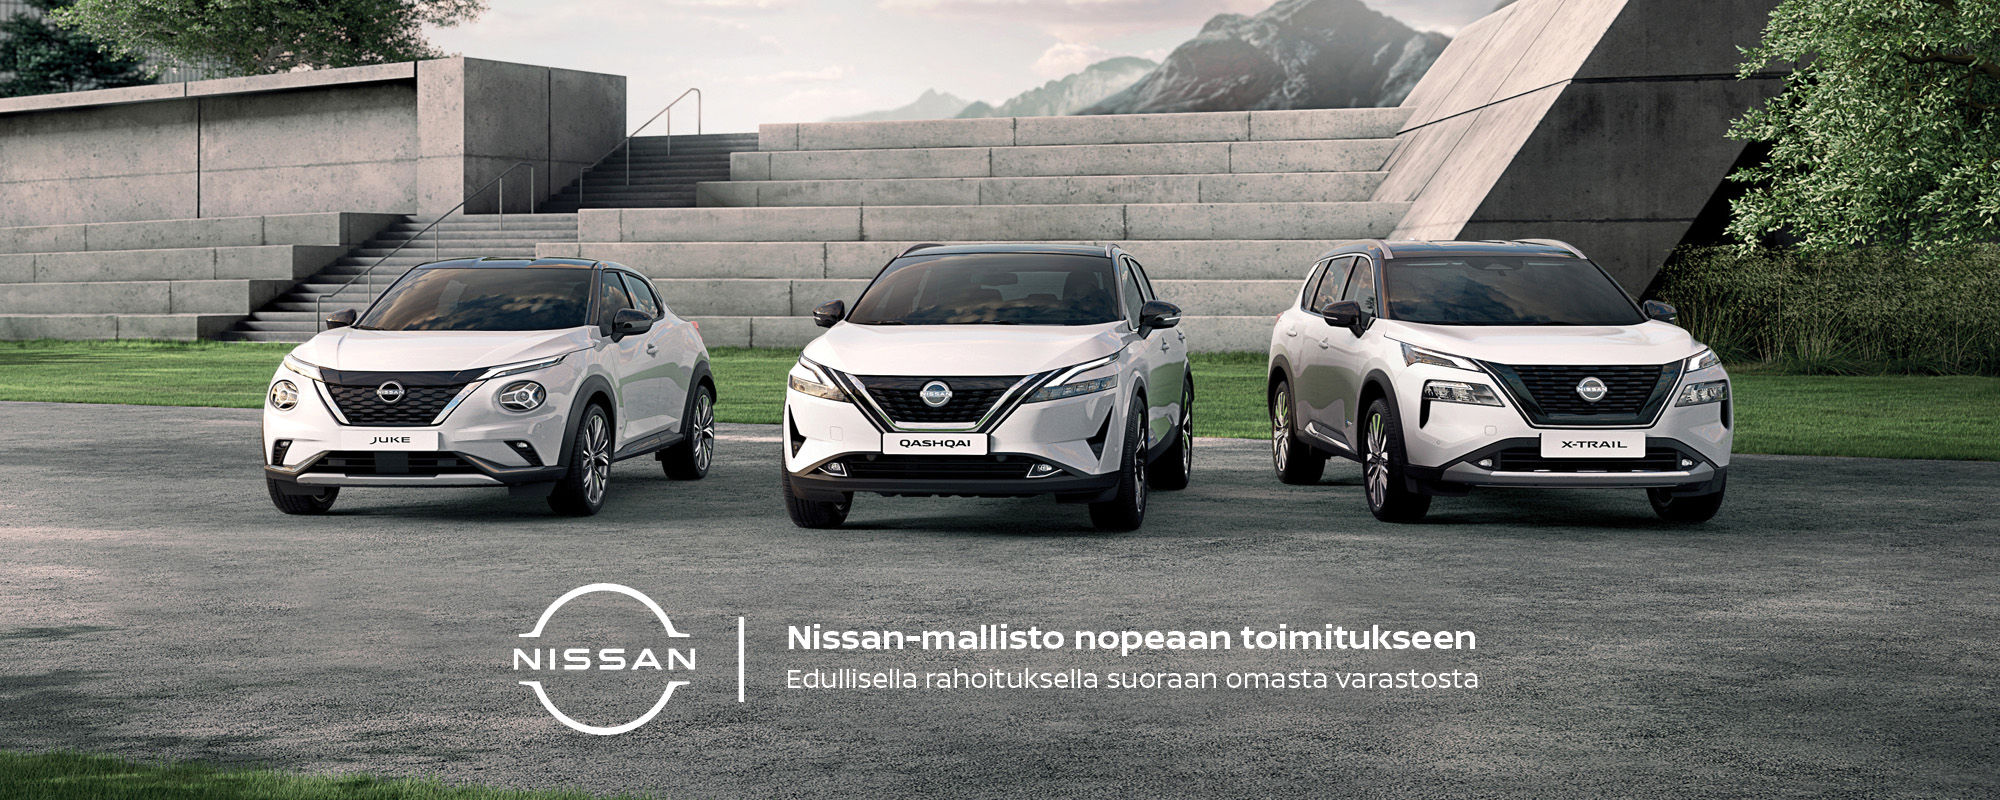 Nissan X-Trail kampanja | Loimaan Laatuauto